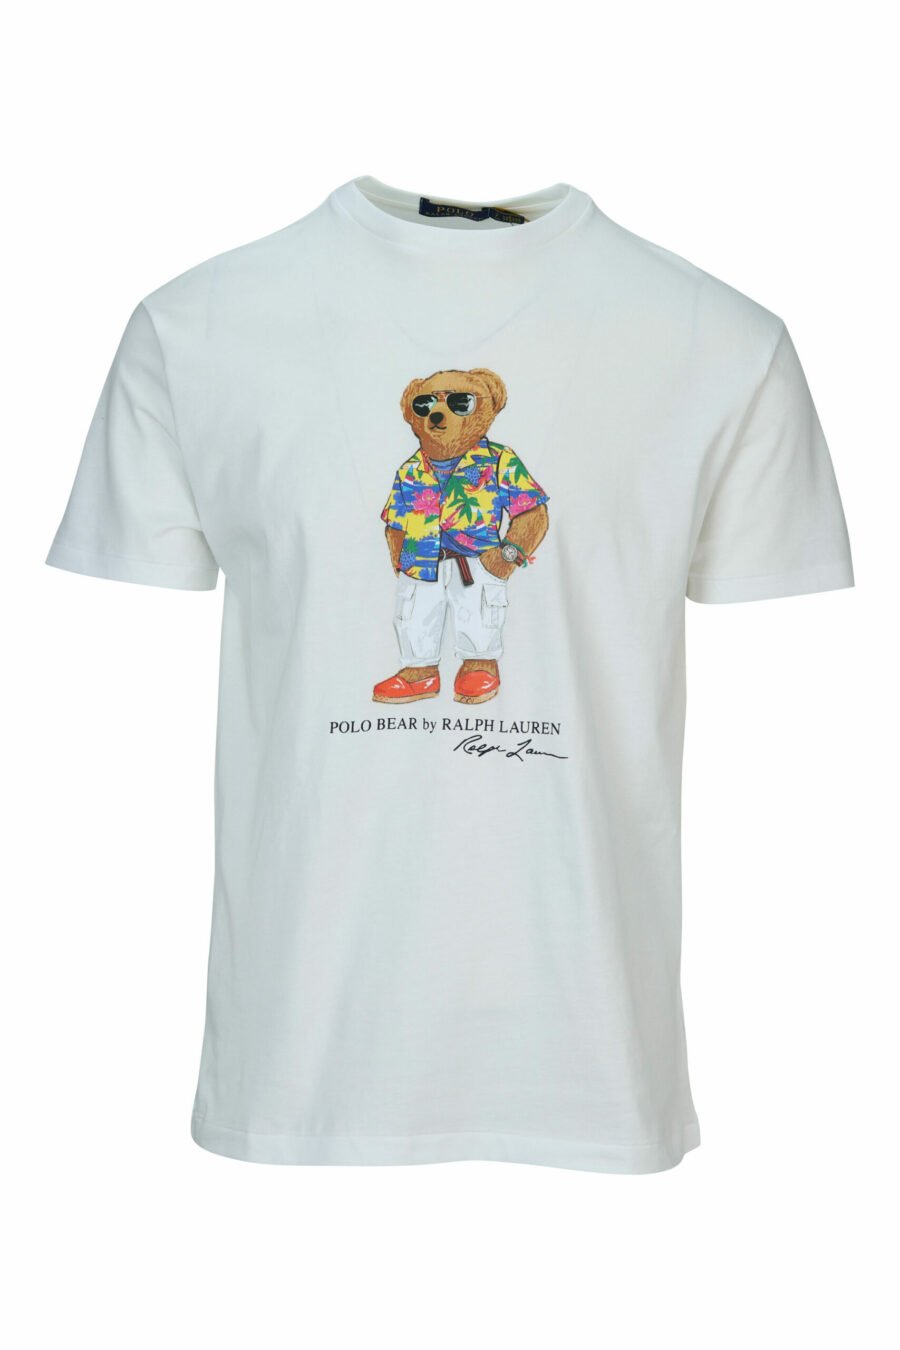 T-shirt branca com maxilogo "polo bear" roupa de praia - 3616535843479 scaled